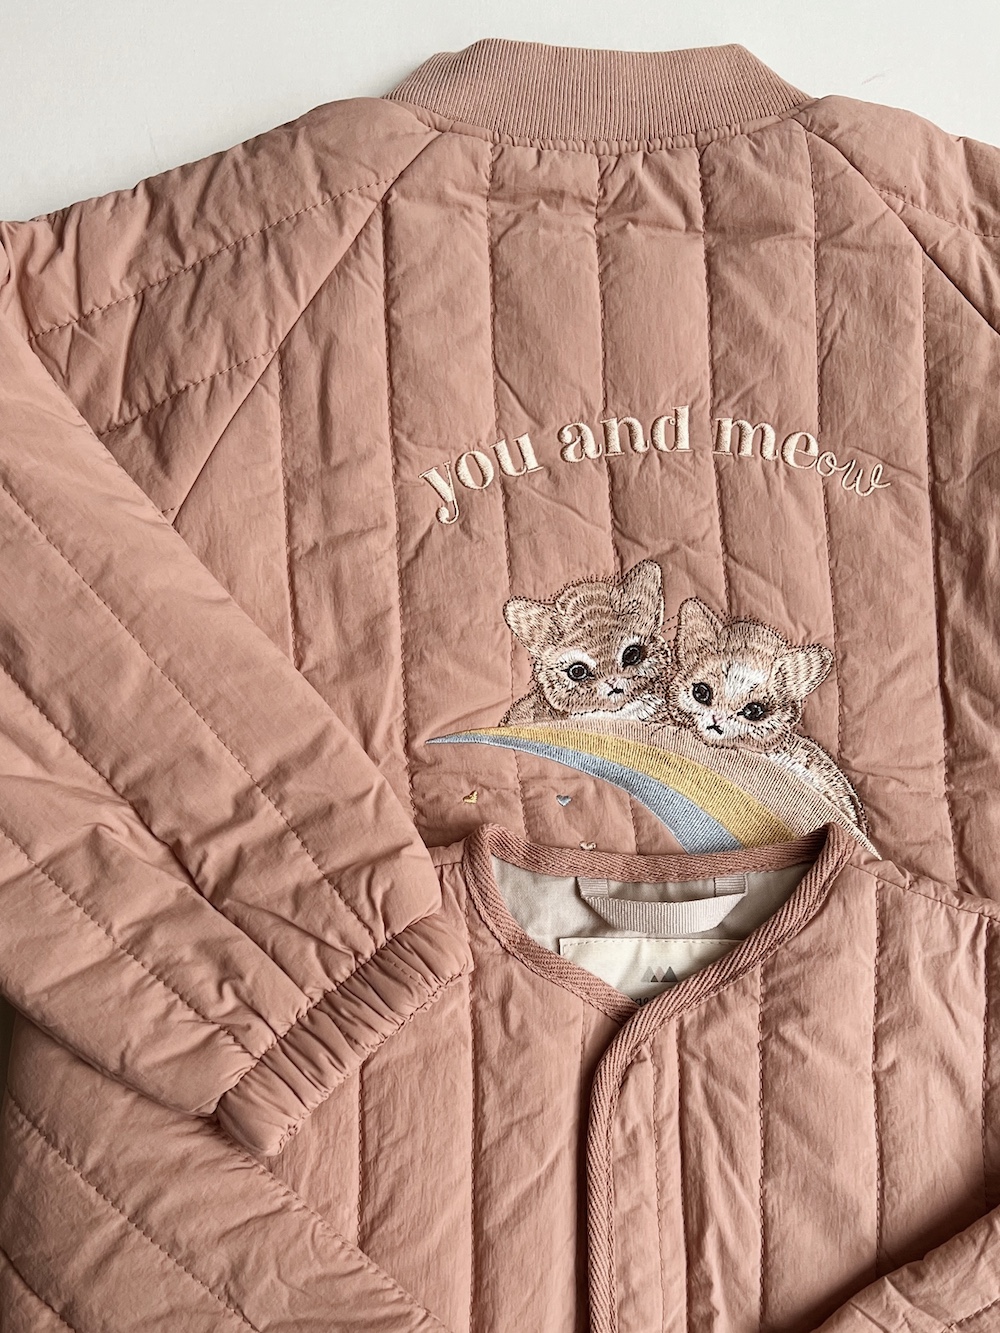 Konges Slojd Juno bomber jacket jasje zomerjasje roze met poezen/katten en regenboog - Minipop